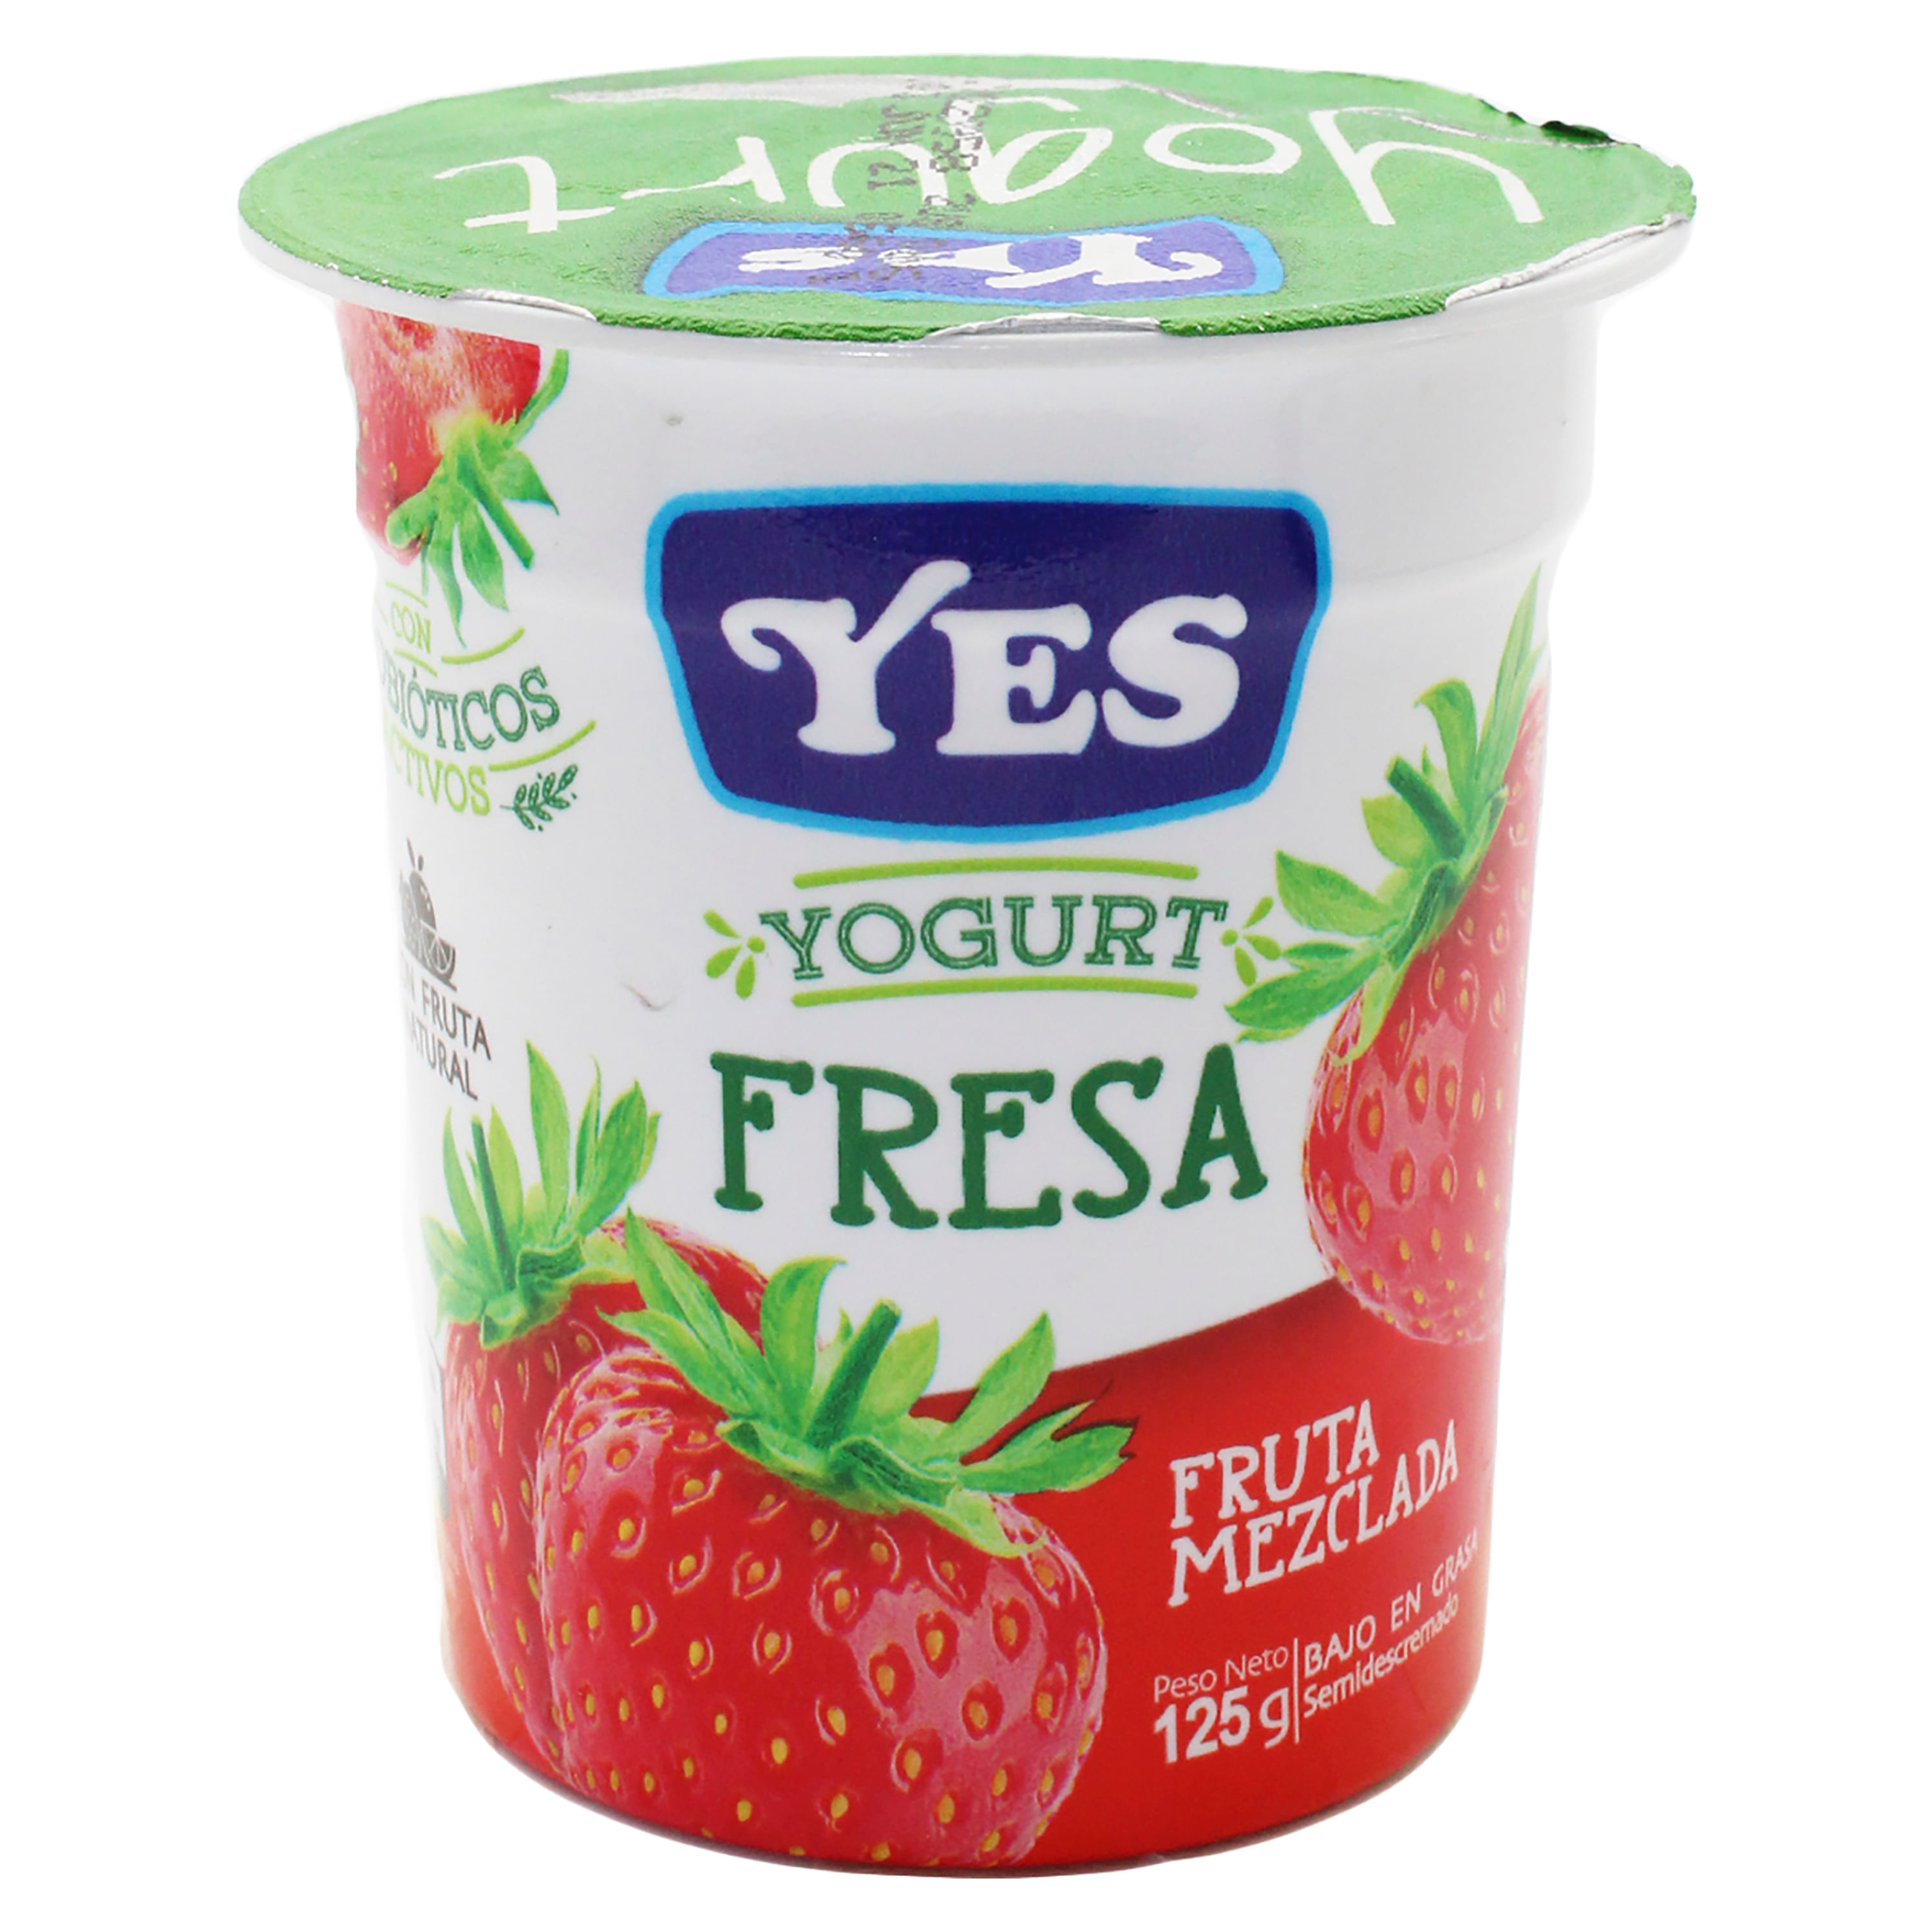 Yoghurt Danone Frutas Selectas con Fresa y Moras 900g